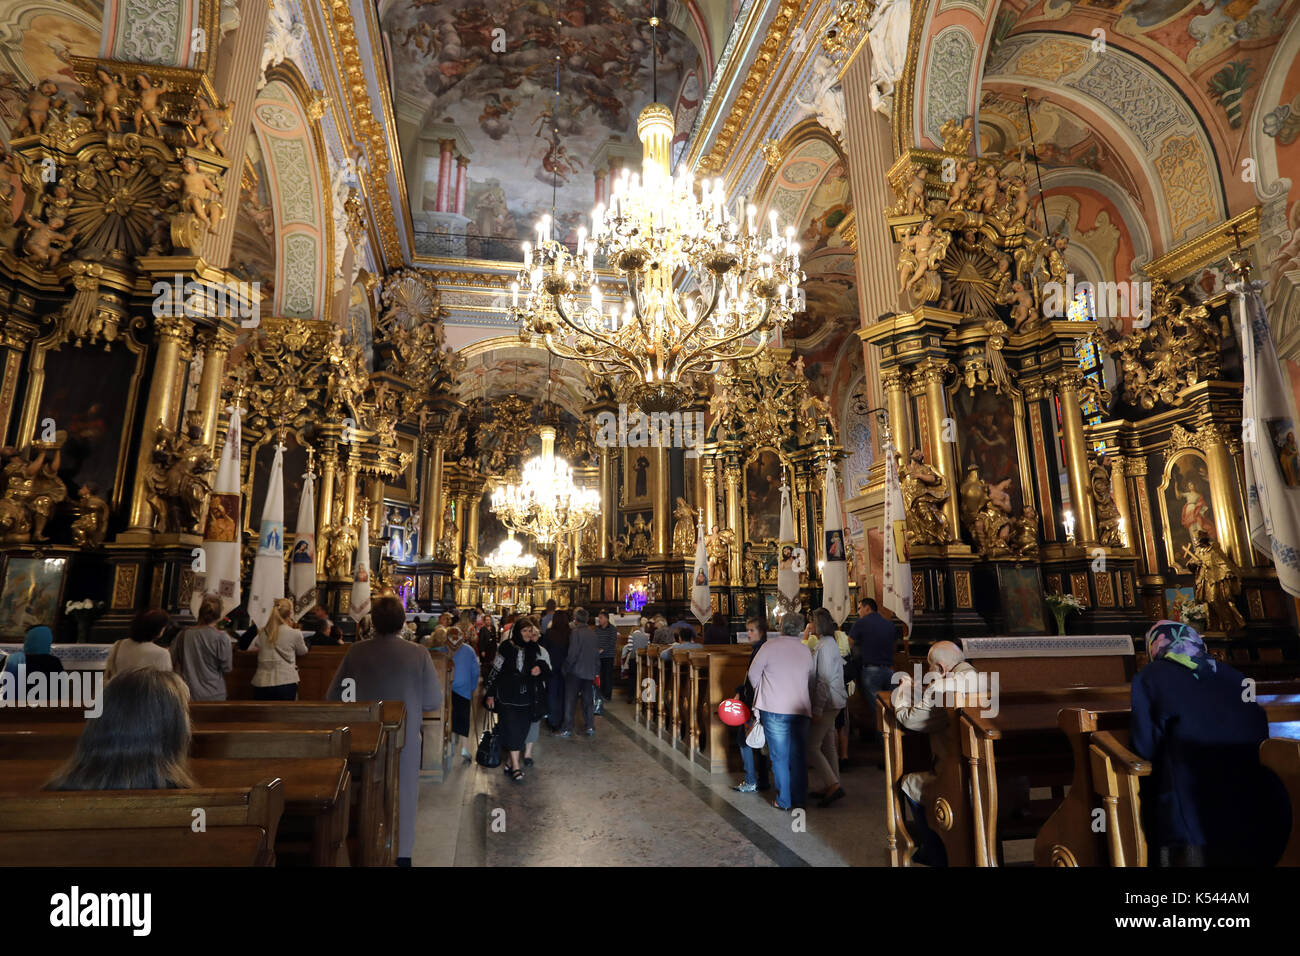 L'intérieur baroque de l'Église des Bernardins dans le centre de Lviv, Ukraine, photographié le 28 août 2017. Banque D'Images